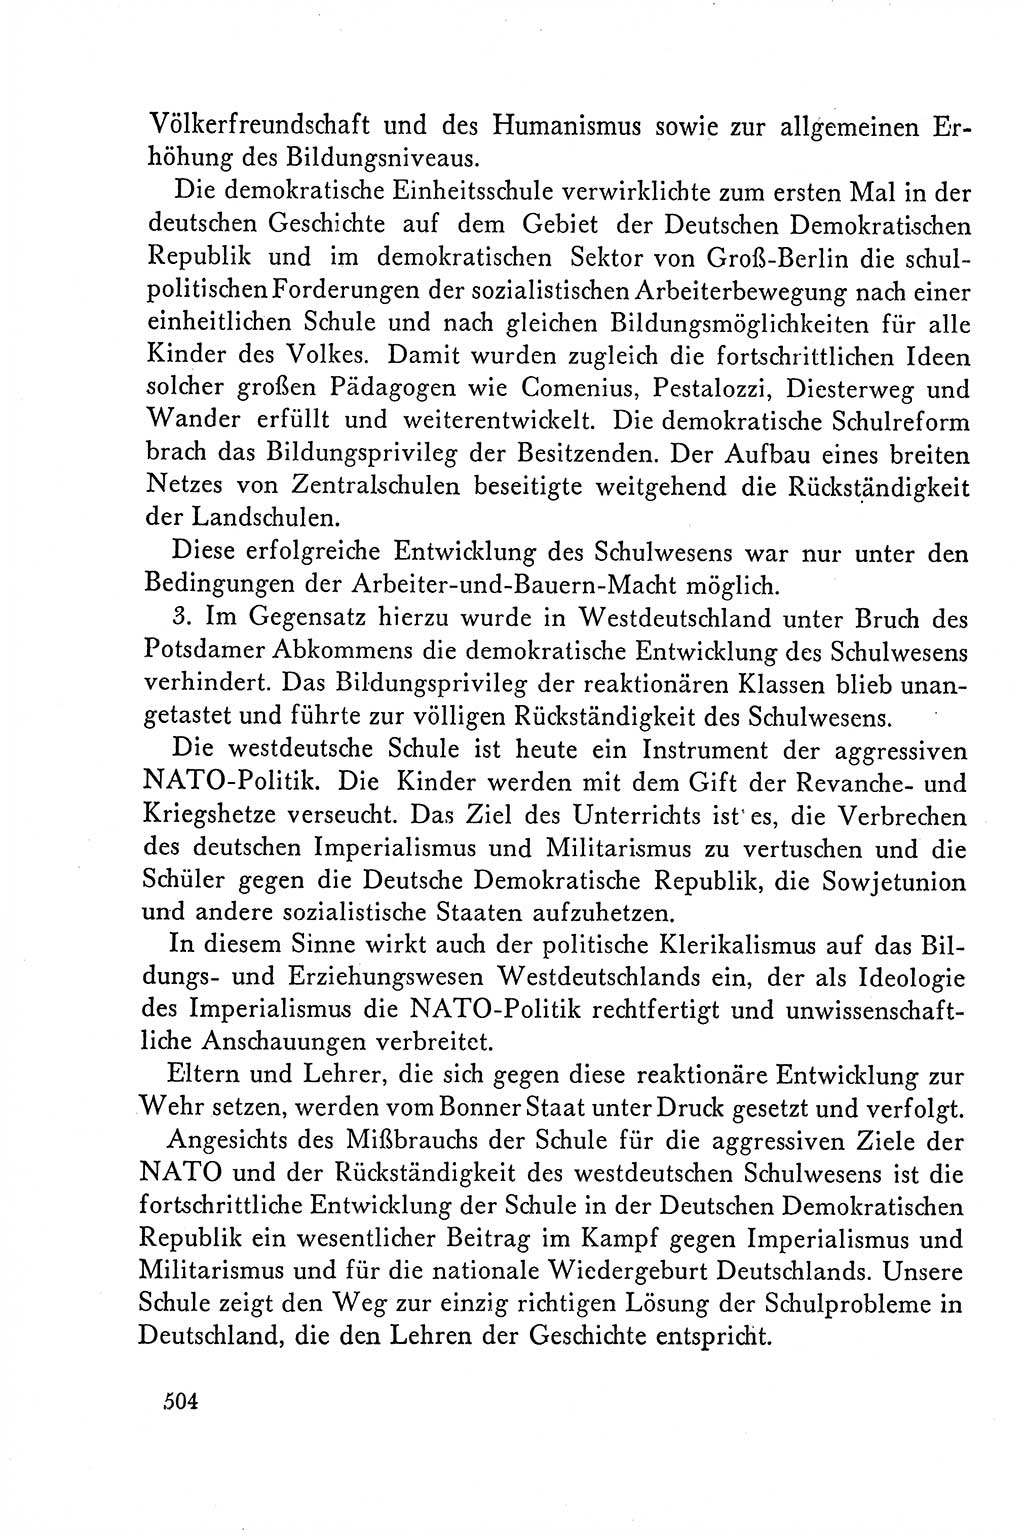 Dokumente der Sozialistischen Einheitspartei Deutschlands (SED) [Deutsche Demokratische Republik (DDR)] 1958-1959, Seite 504 (Dok. SED DDR 1958-1959, S. 504)